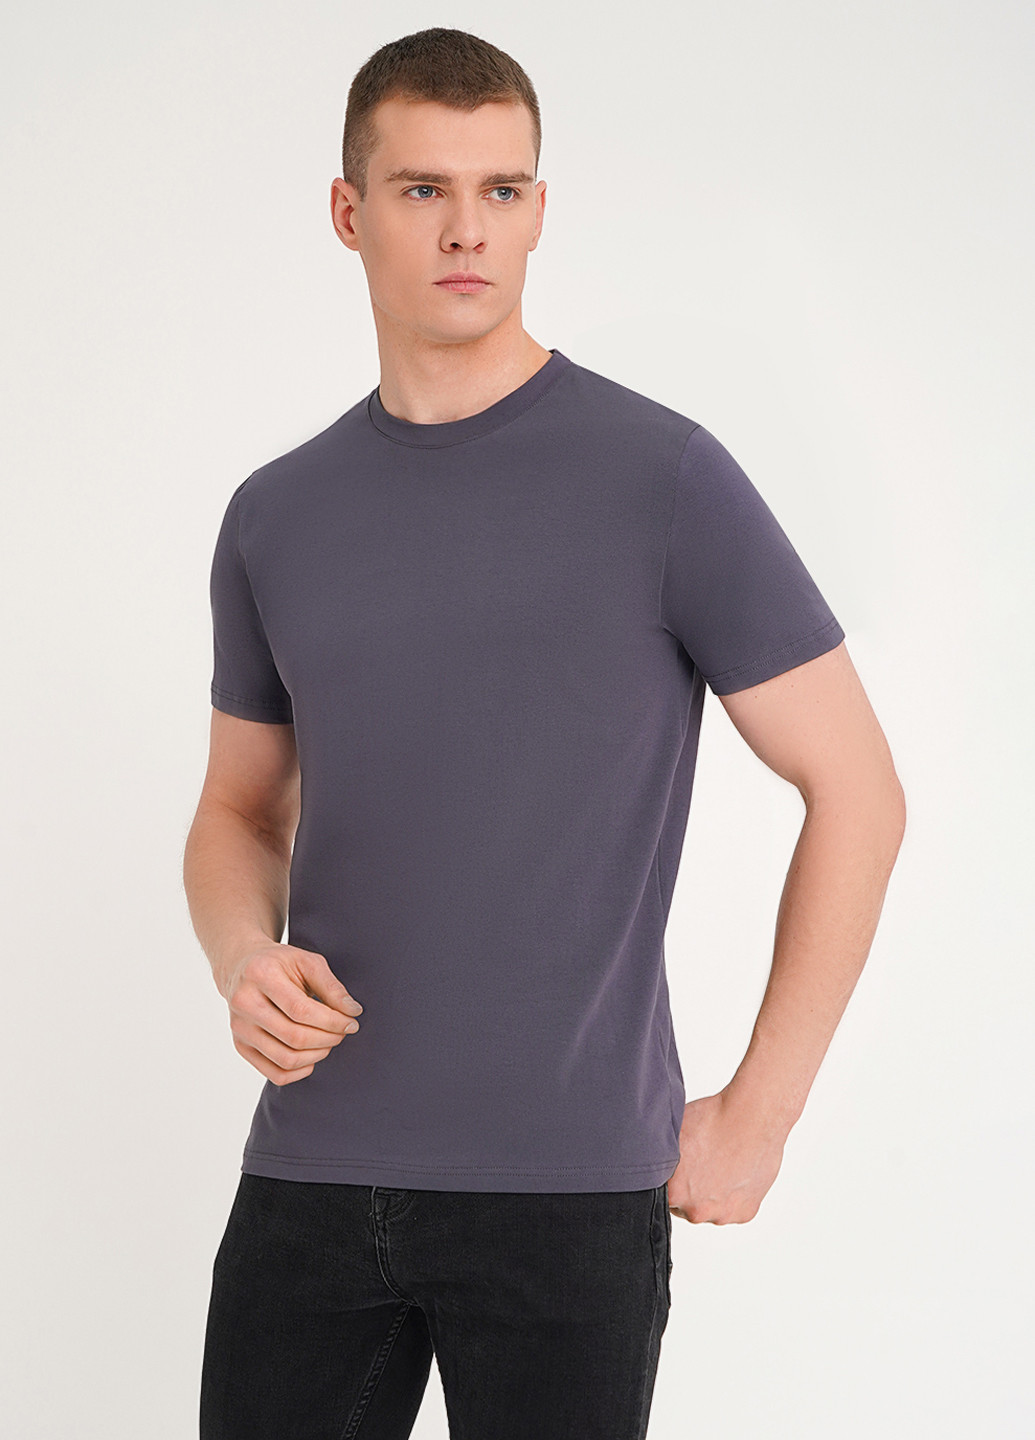 Сіра чоловіча футболка KASTA design